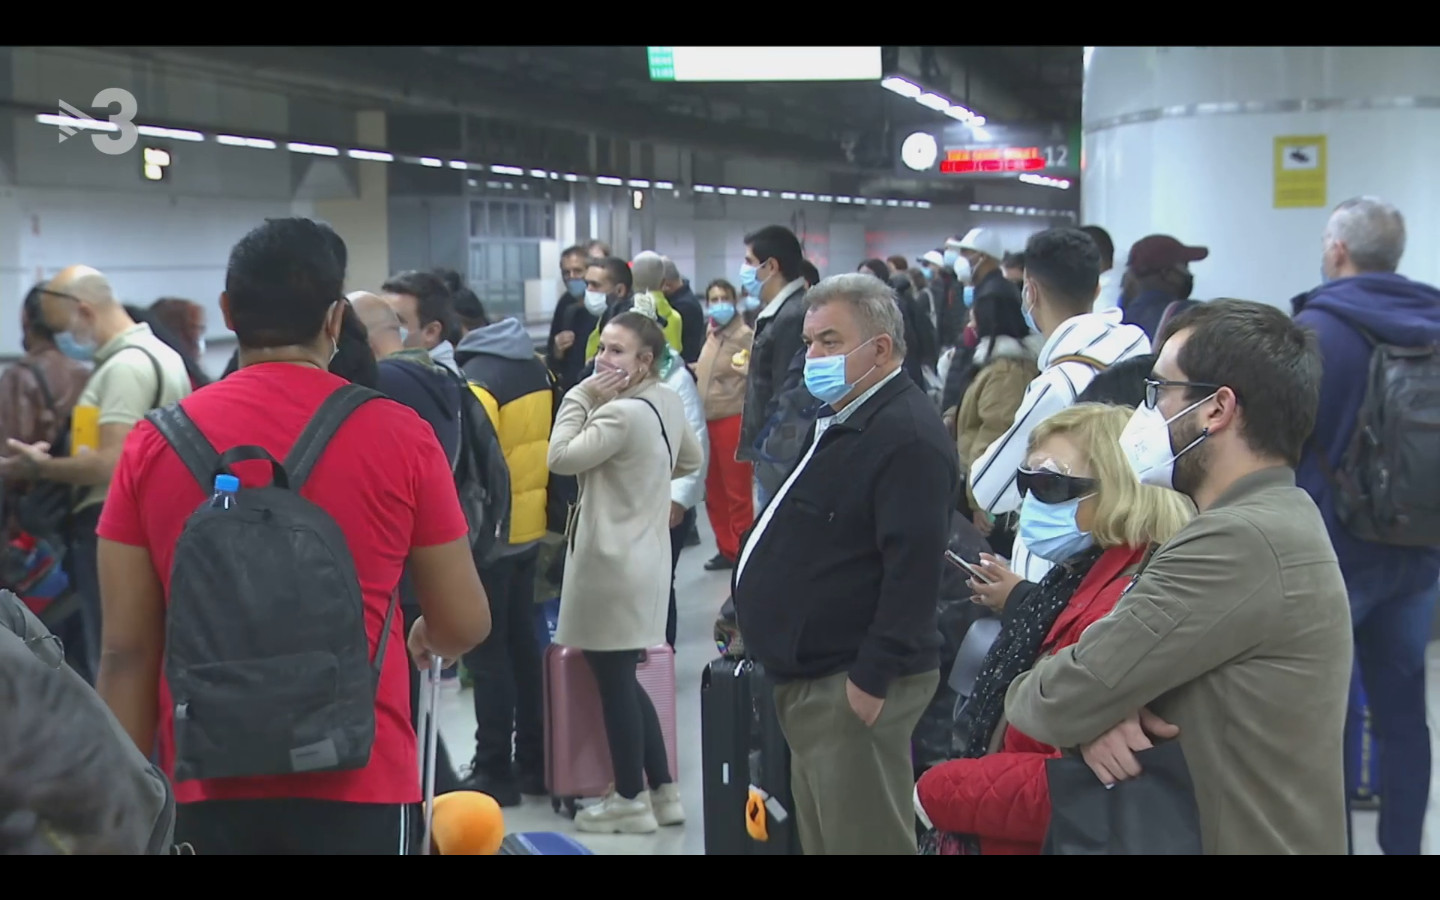 Uno de los andenes de Barcelona Sants, abarrotado de pasajeros que esperan un tren durante la pandemia del Covid-19 / TV3